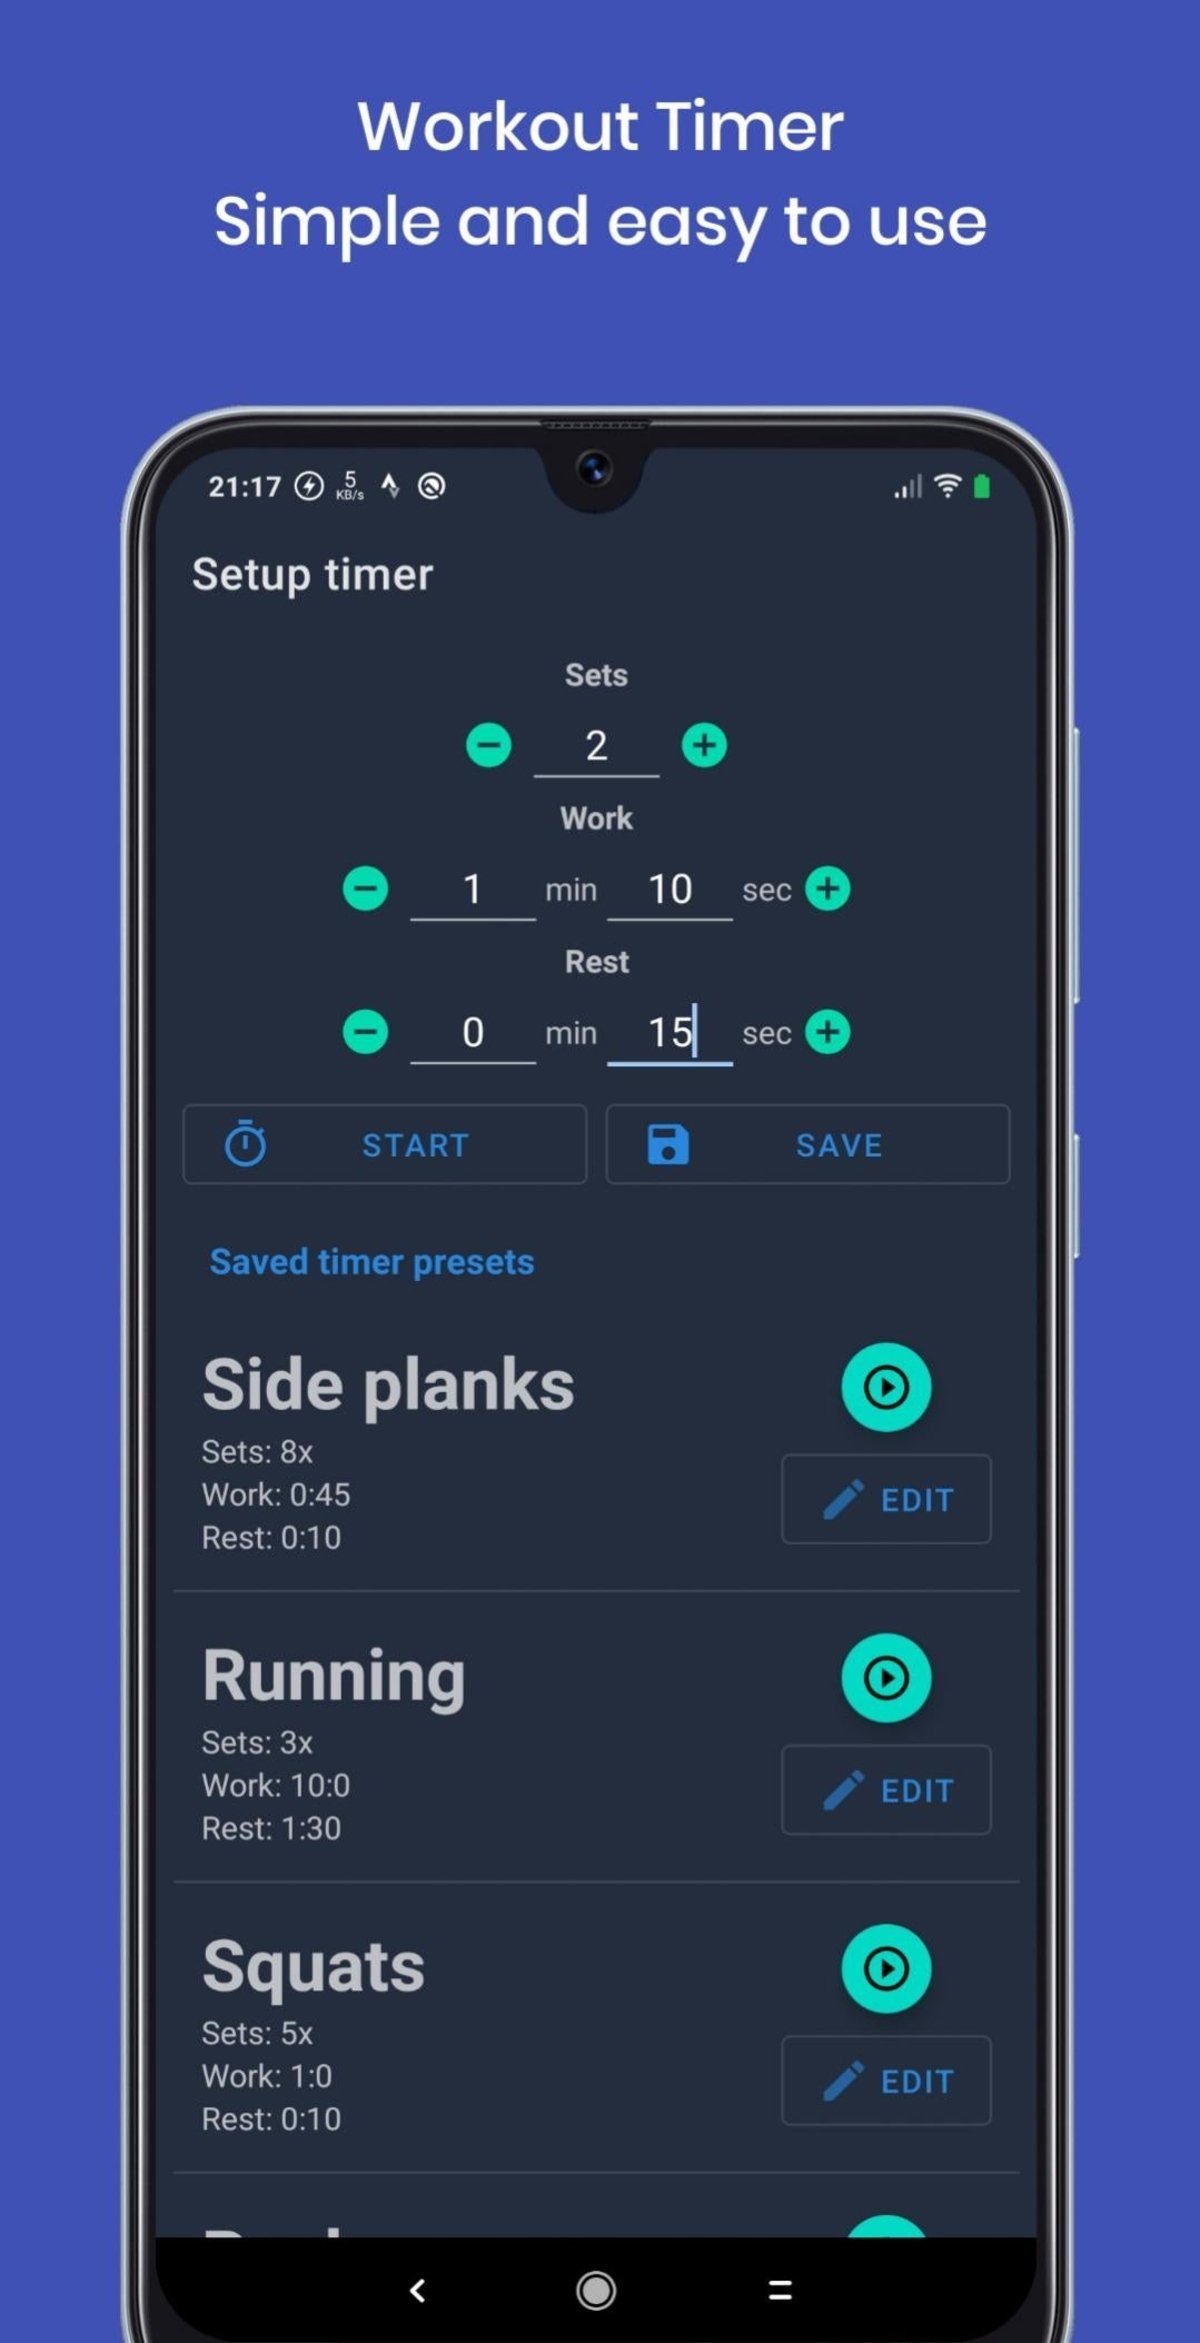 App de la semana: crea tus propias rutinas de ejercicios con este temporizador minimalista